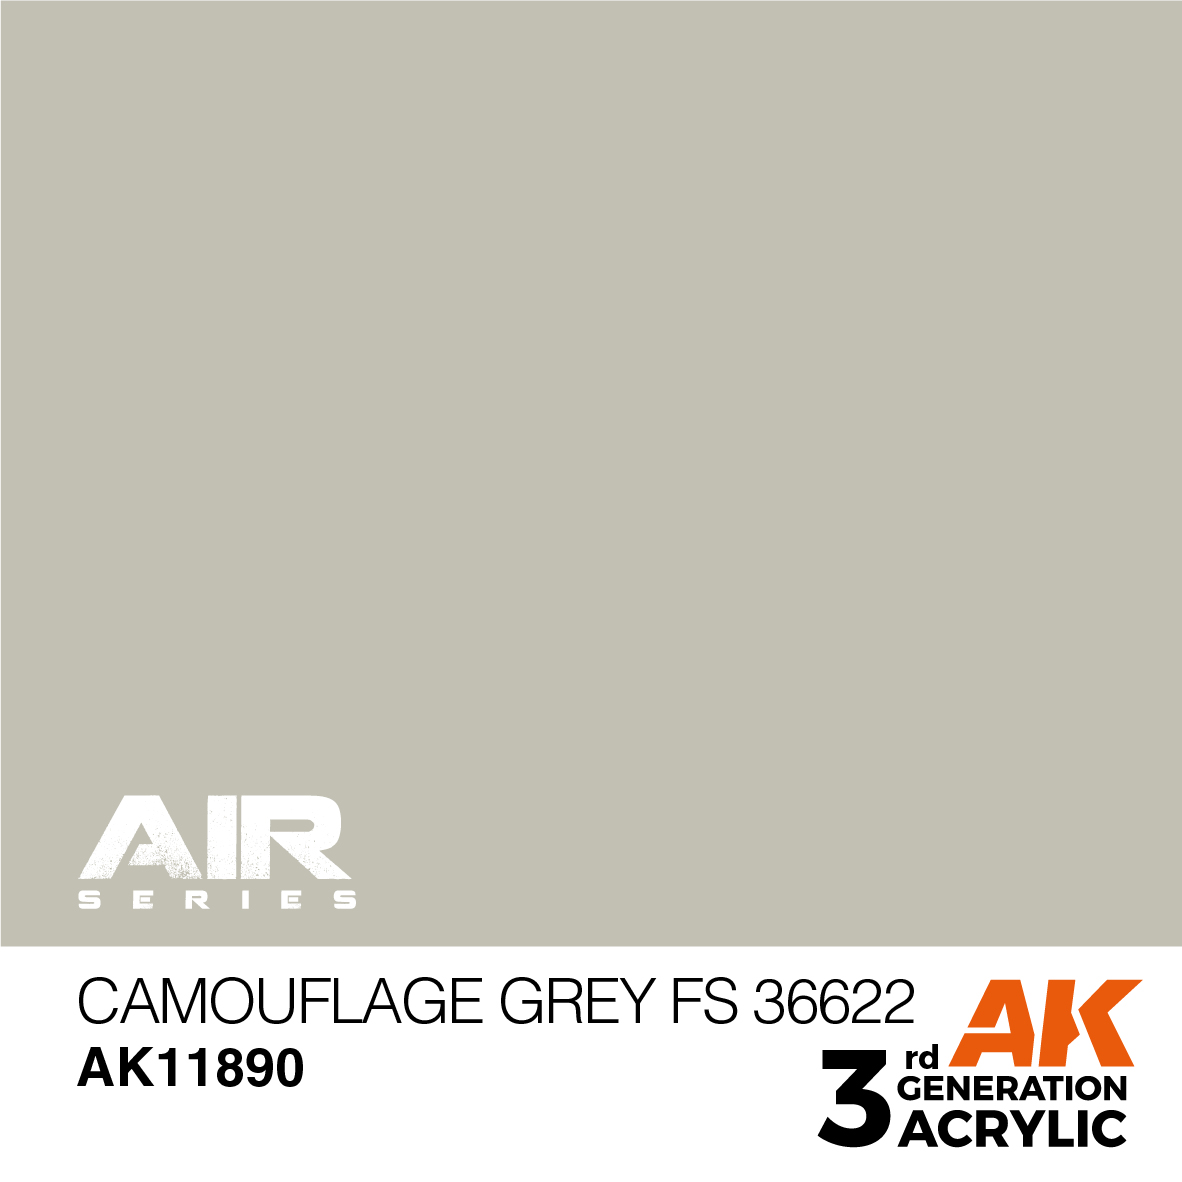 Camouflage Grey FS 36622 – AIR